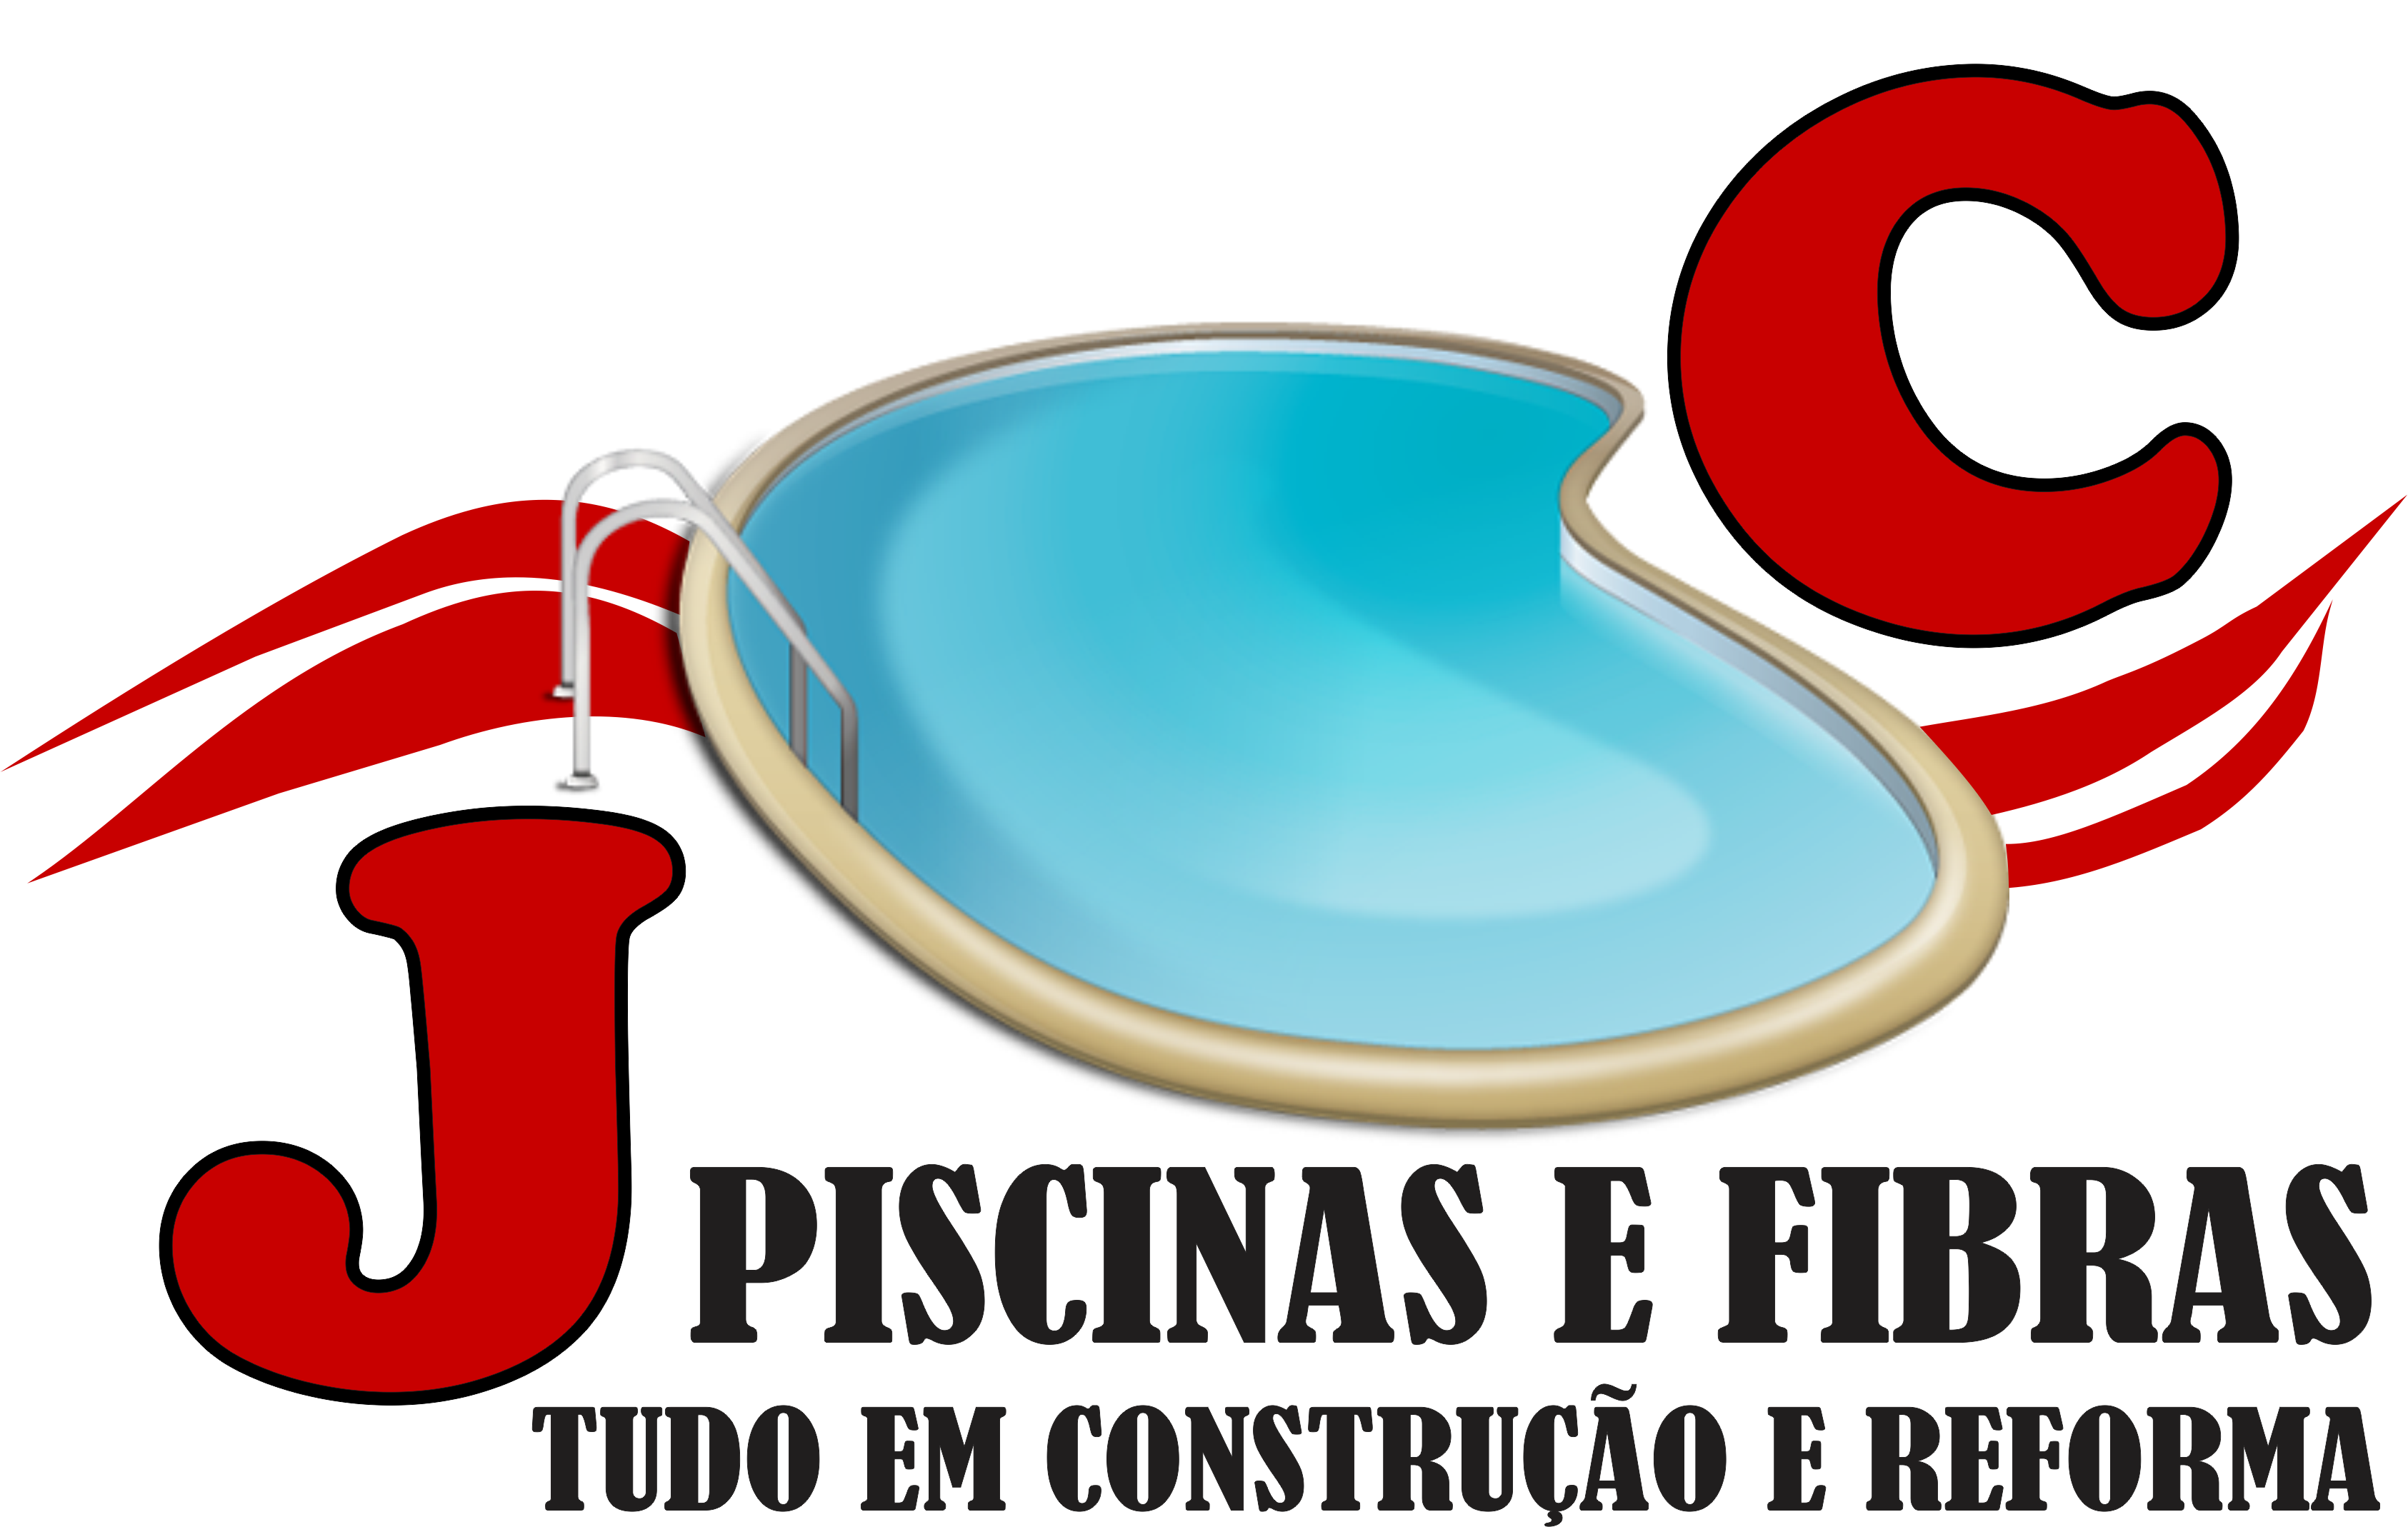 JC PISCINAS E FIBRAS - Piscinas - Manaus, AM